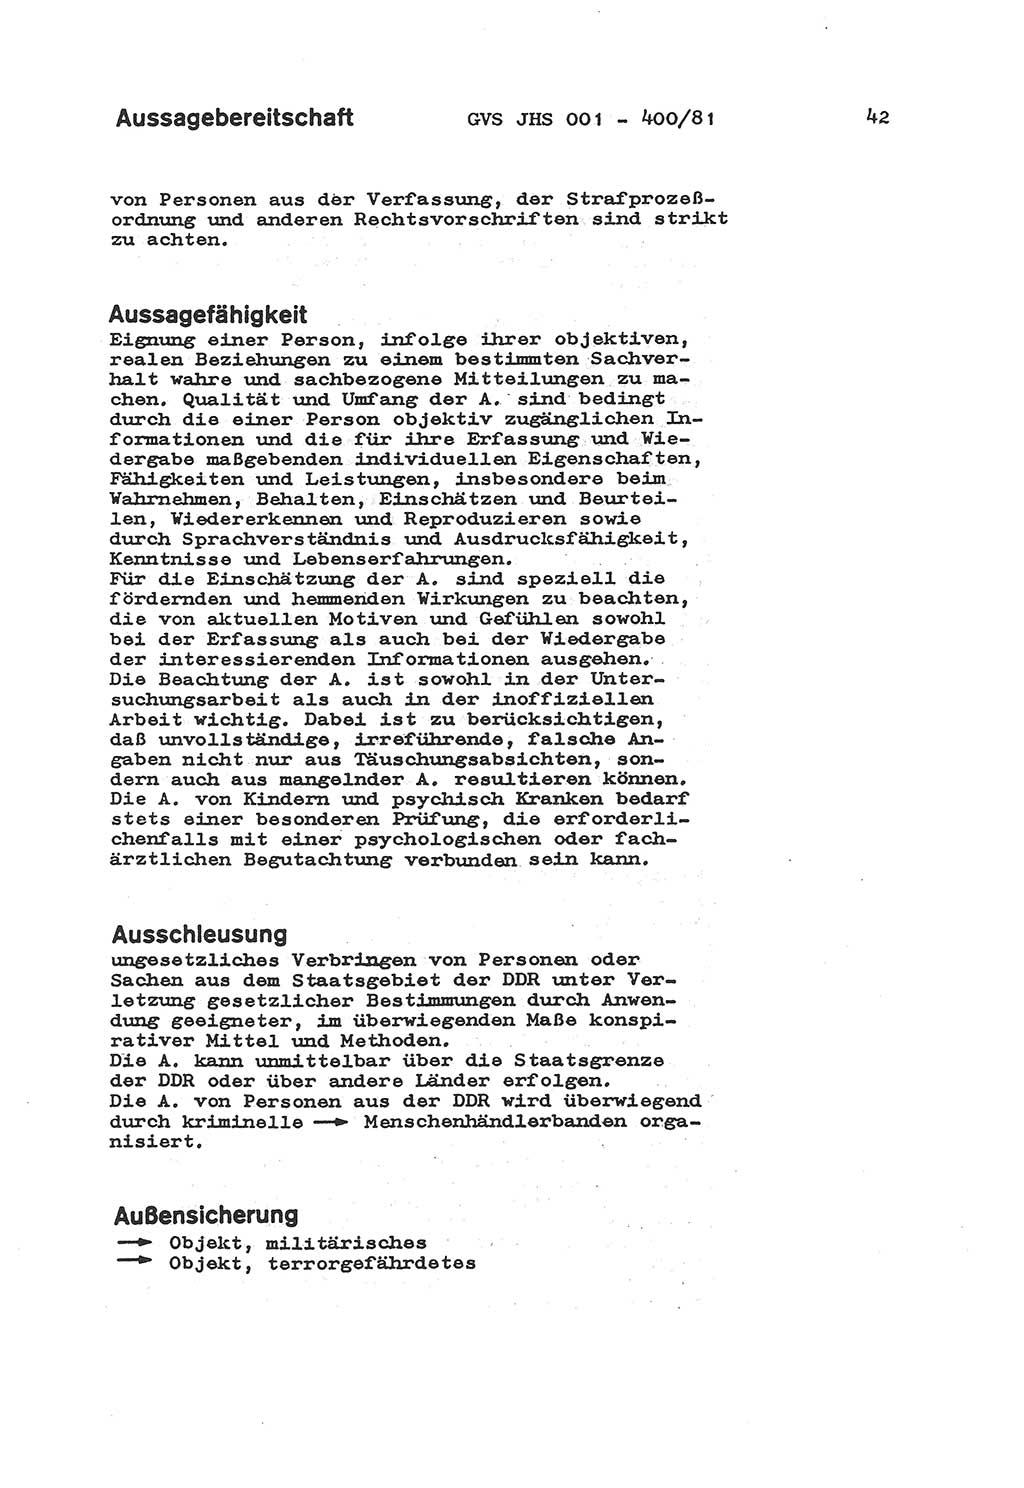 Wörterbuch der politisch-operativen Arbeit, Ministerium für Staatssicherheit (MfS) [Deutsche Demokratische Republik (DDR)], Juristische Hochschule (JHS), Geheime Verschlußsache (GVS) o001-400/81, Potsdam 1985, Blatt 42 (Wb. pol.-op. Arb. MfS DDR JHS GVS o001-400/81 1985, Bl. 42)